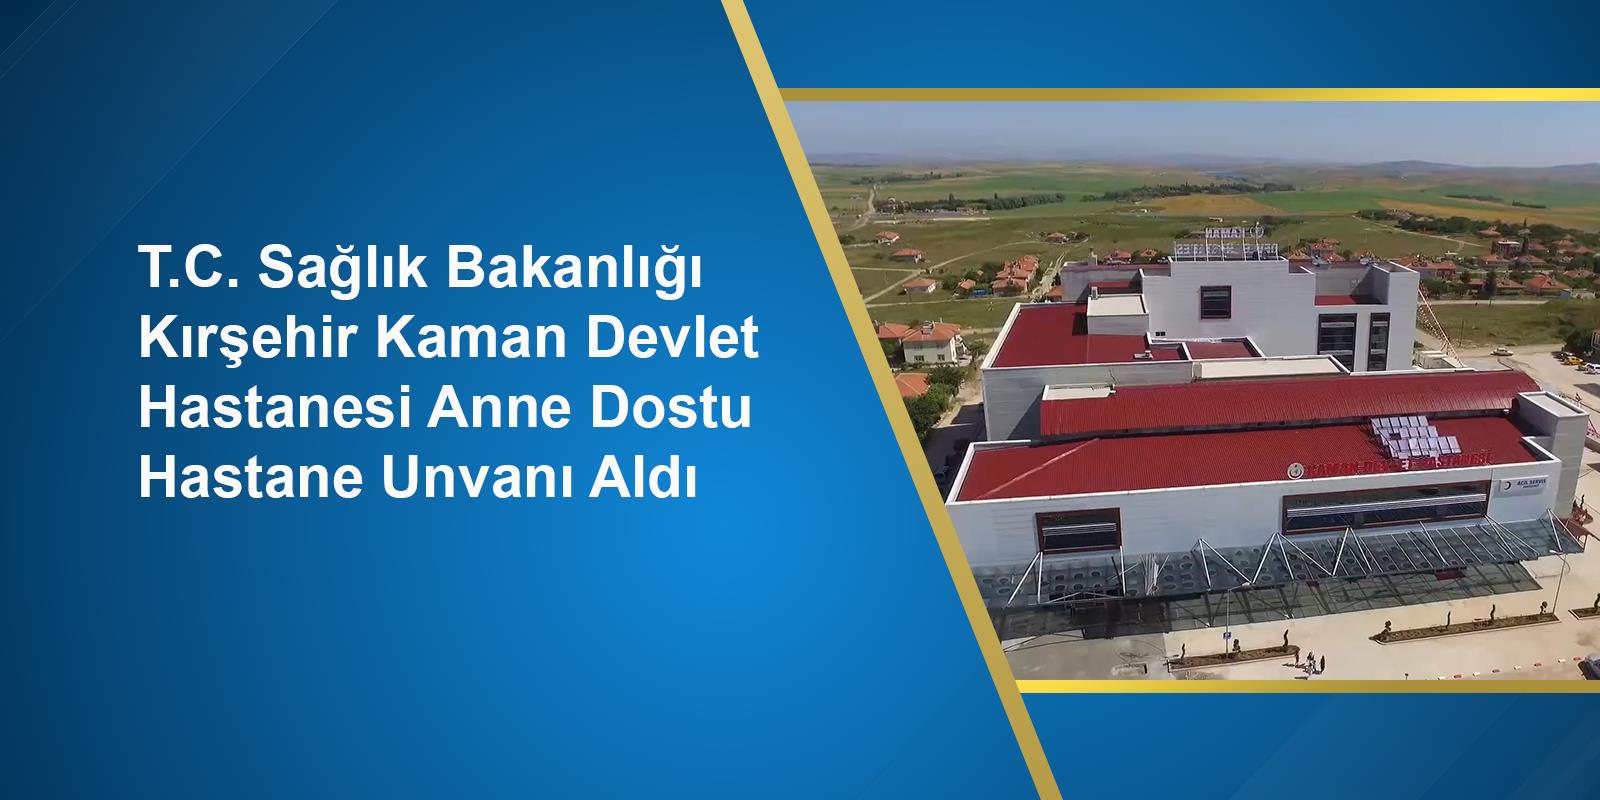 T.C. Sağlık Bakanlığı Kırşehir Kaman Devlet Hastanesi Anne Dostu Hastane Unvanı Aldı